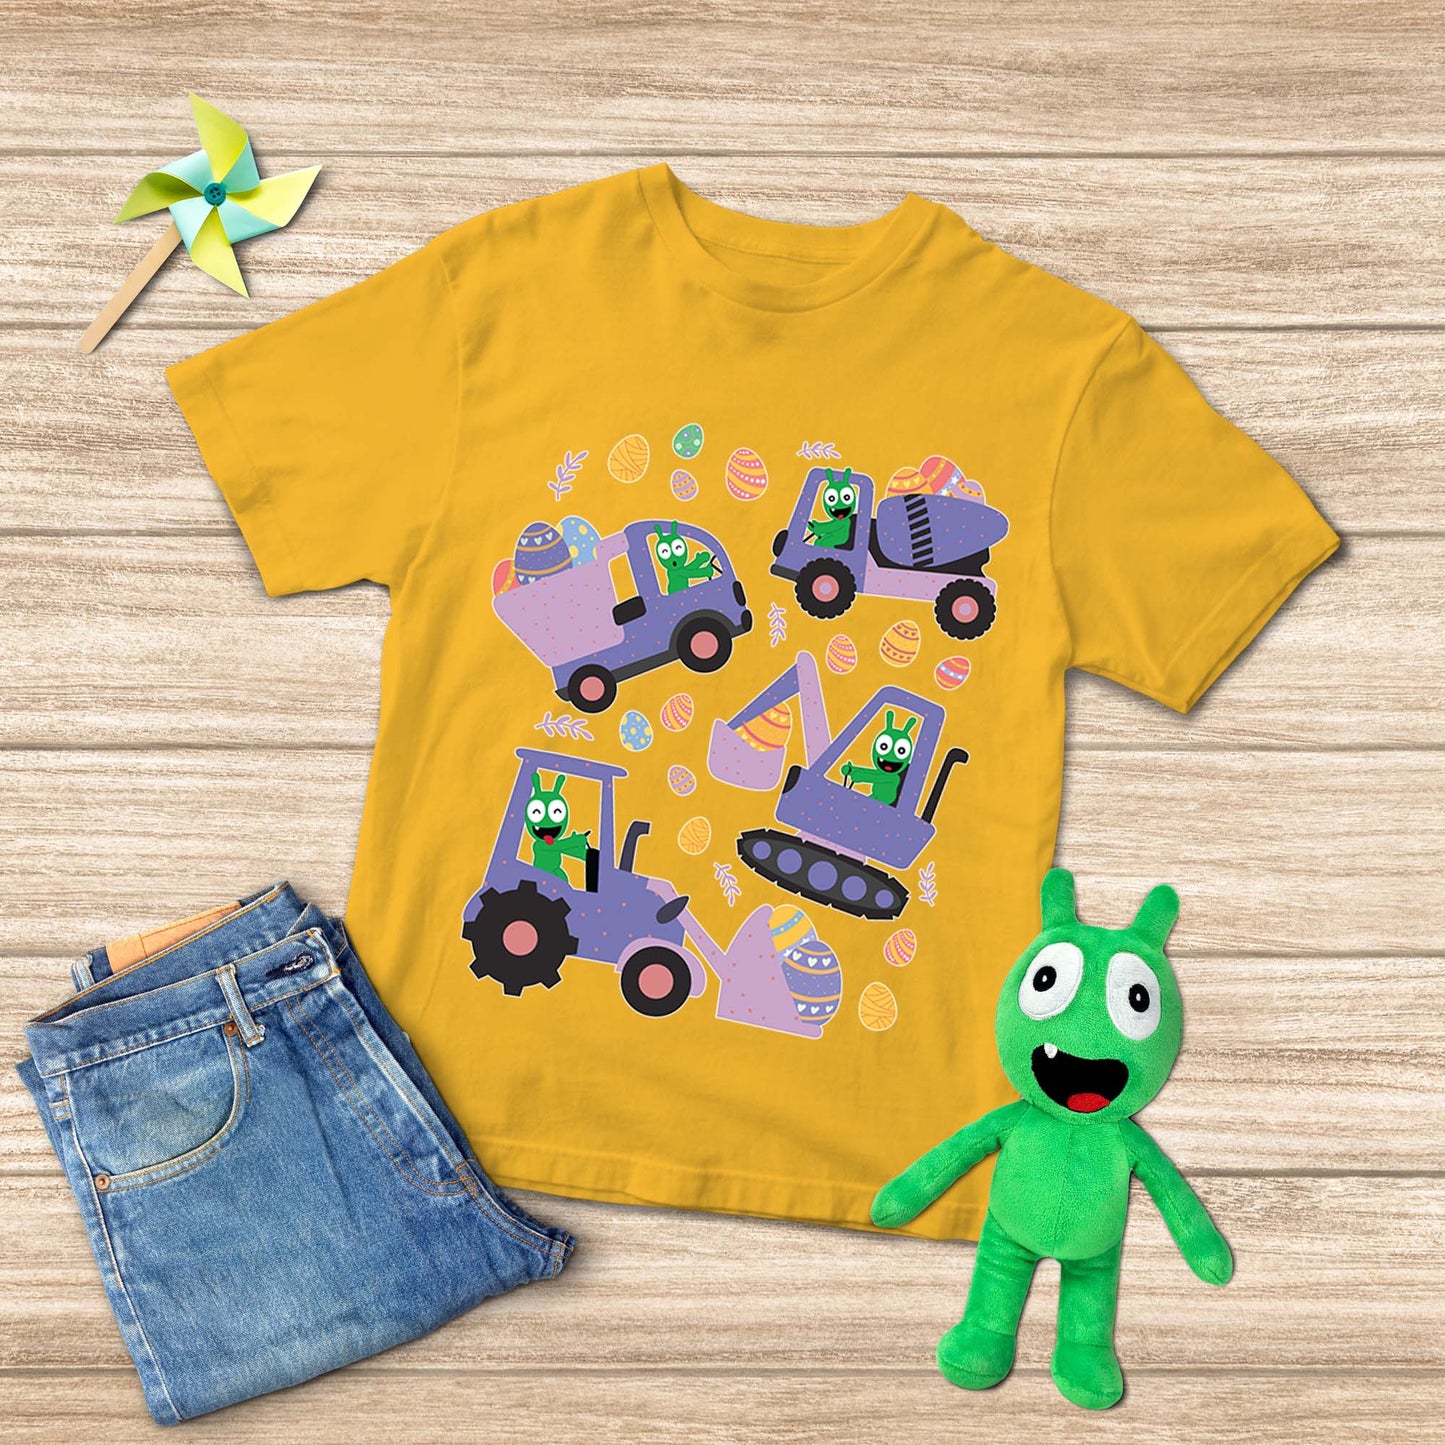 Pea Pea balaie les œufs de Pâques avec un t-shirt pour jeunes de véhicules de construction 